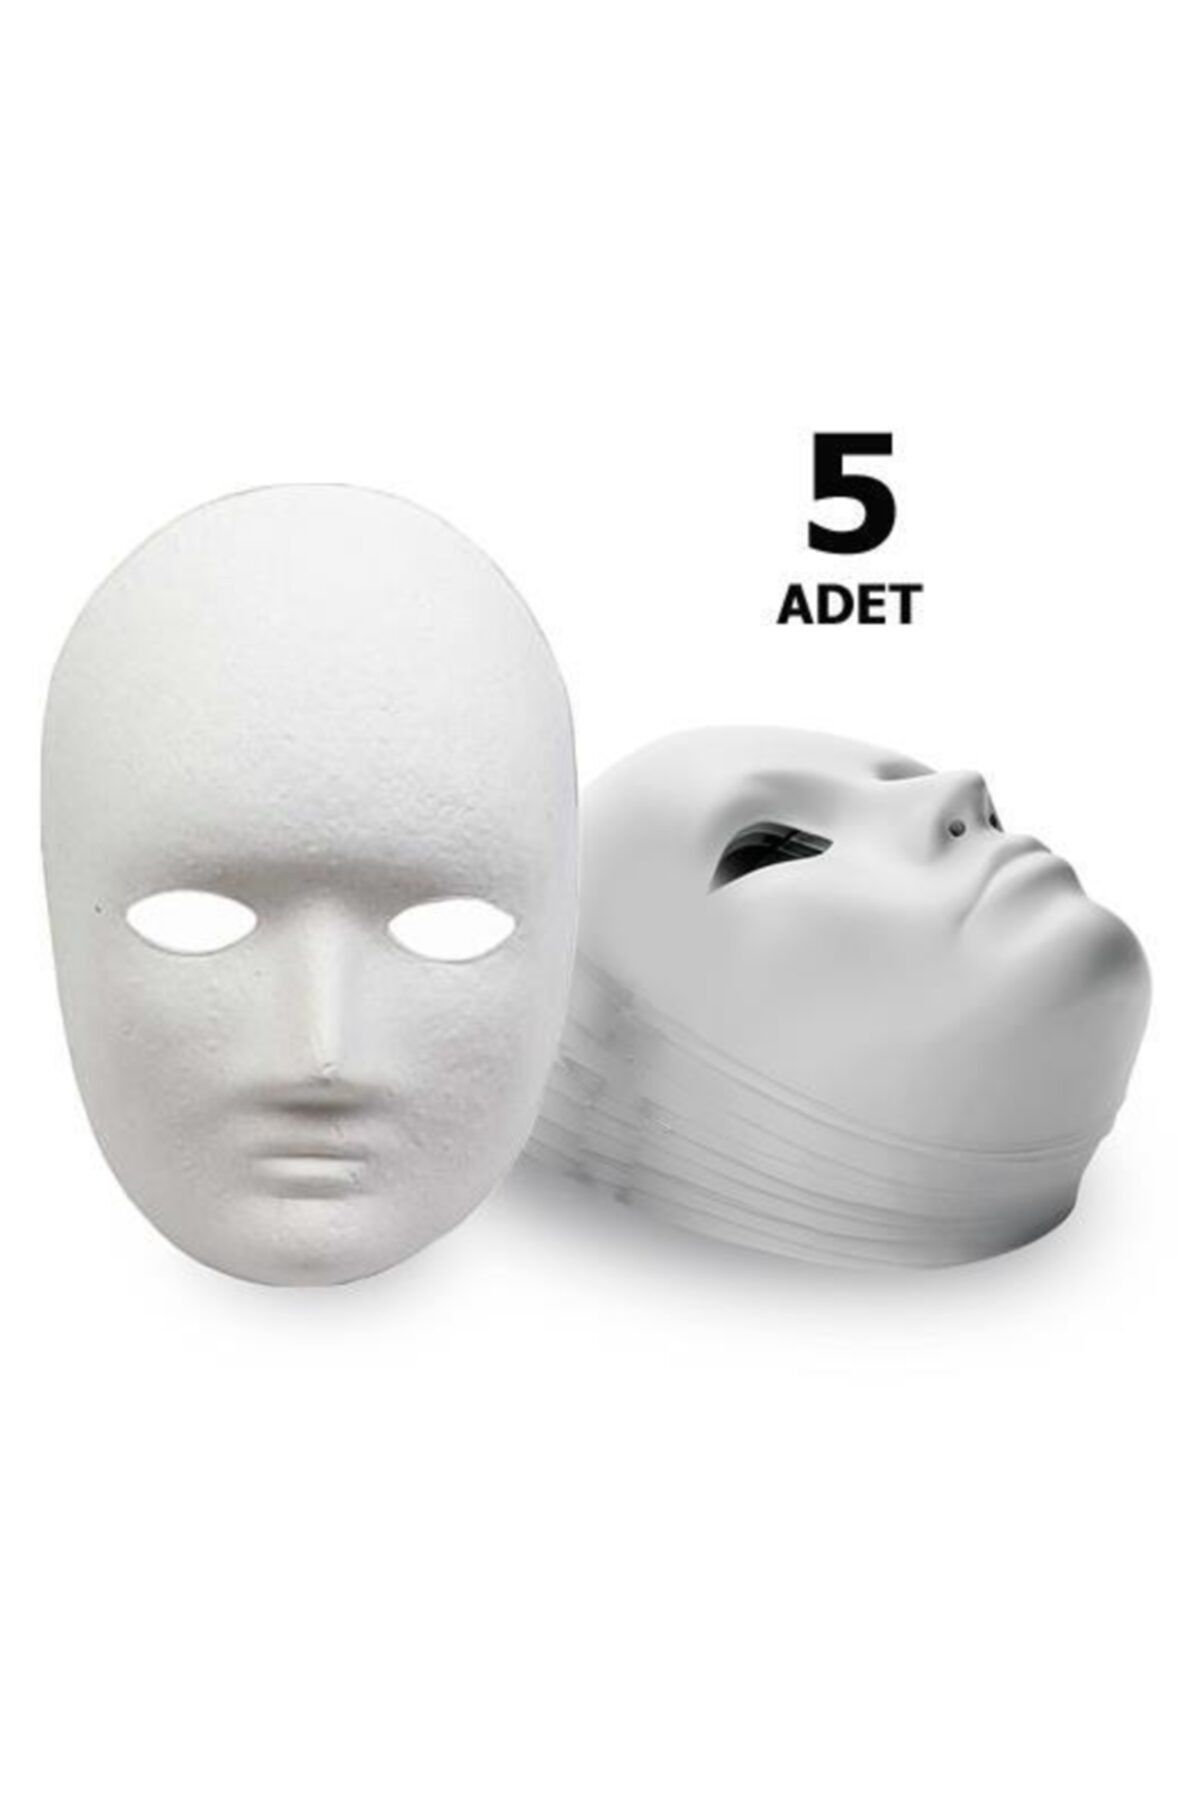 Hobialem 5 Adet, Karton Maske, Boyanabilir, Eğitici Maske Boyama, Etkinlik Ve Hobi Maskesi